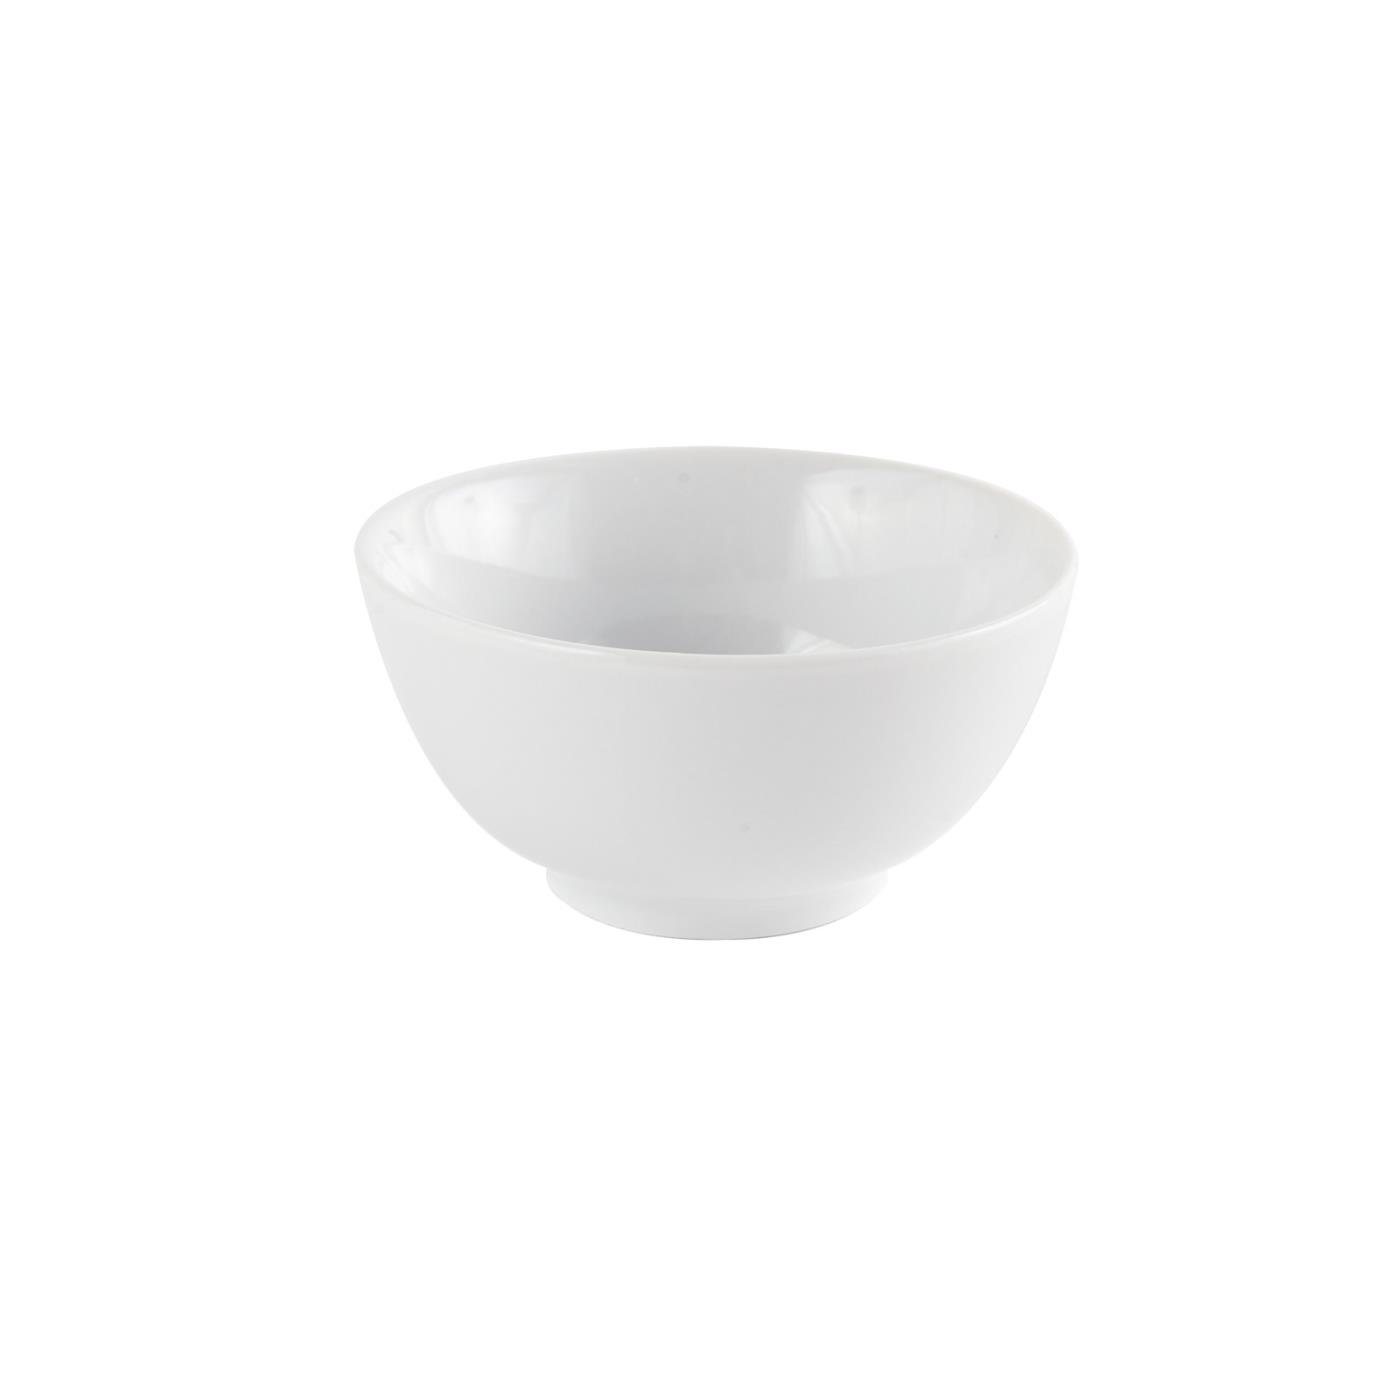 White Ceramic Round Rice Bowl - 4"